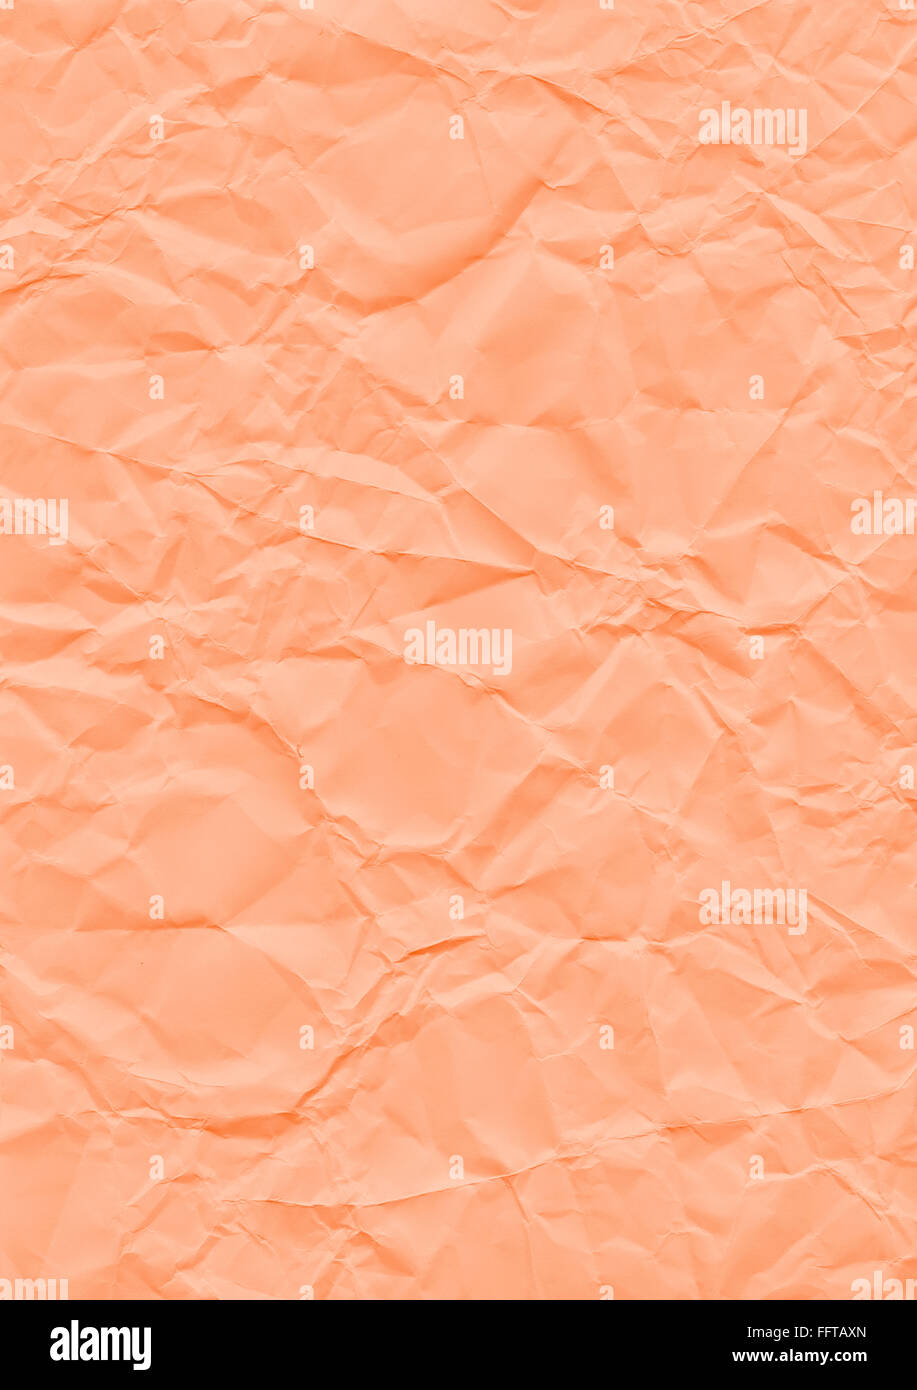 Knitter Hintergrund orange Papier geknickt Knicke knicken zerknittert Knautsch zerknautscht kaputt gefaltet falten faltig Textur Stock Photo